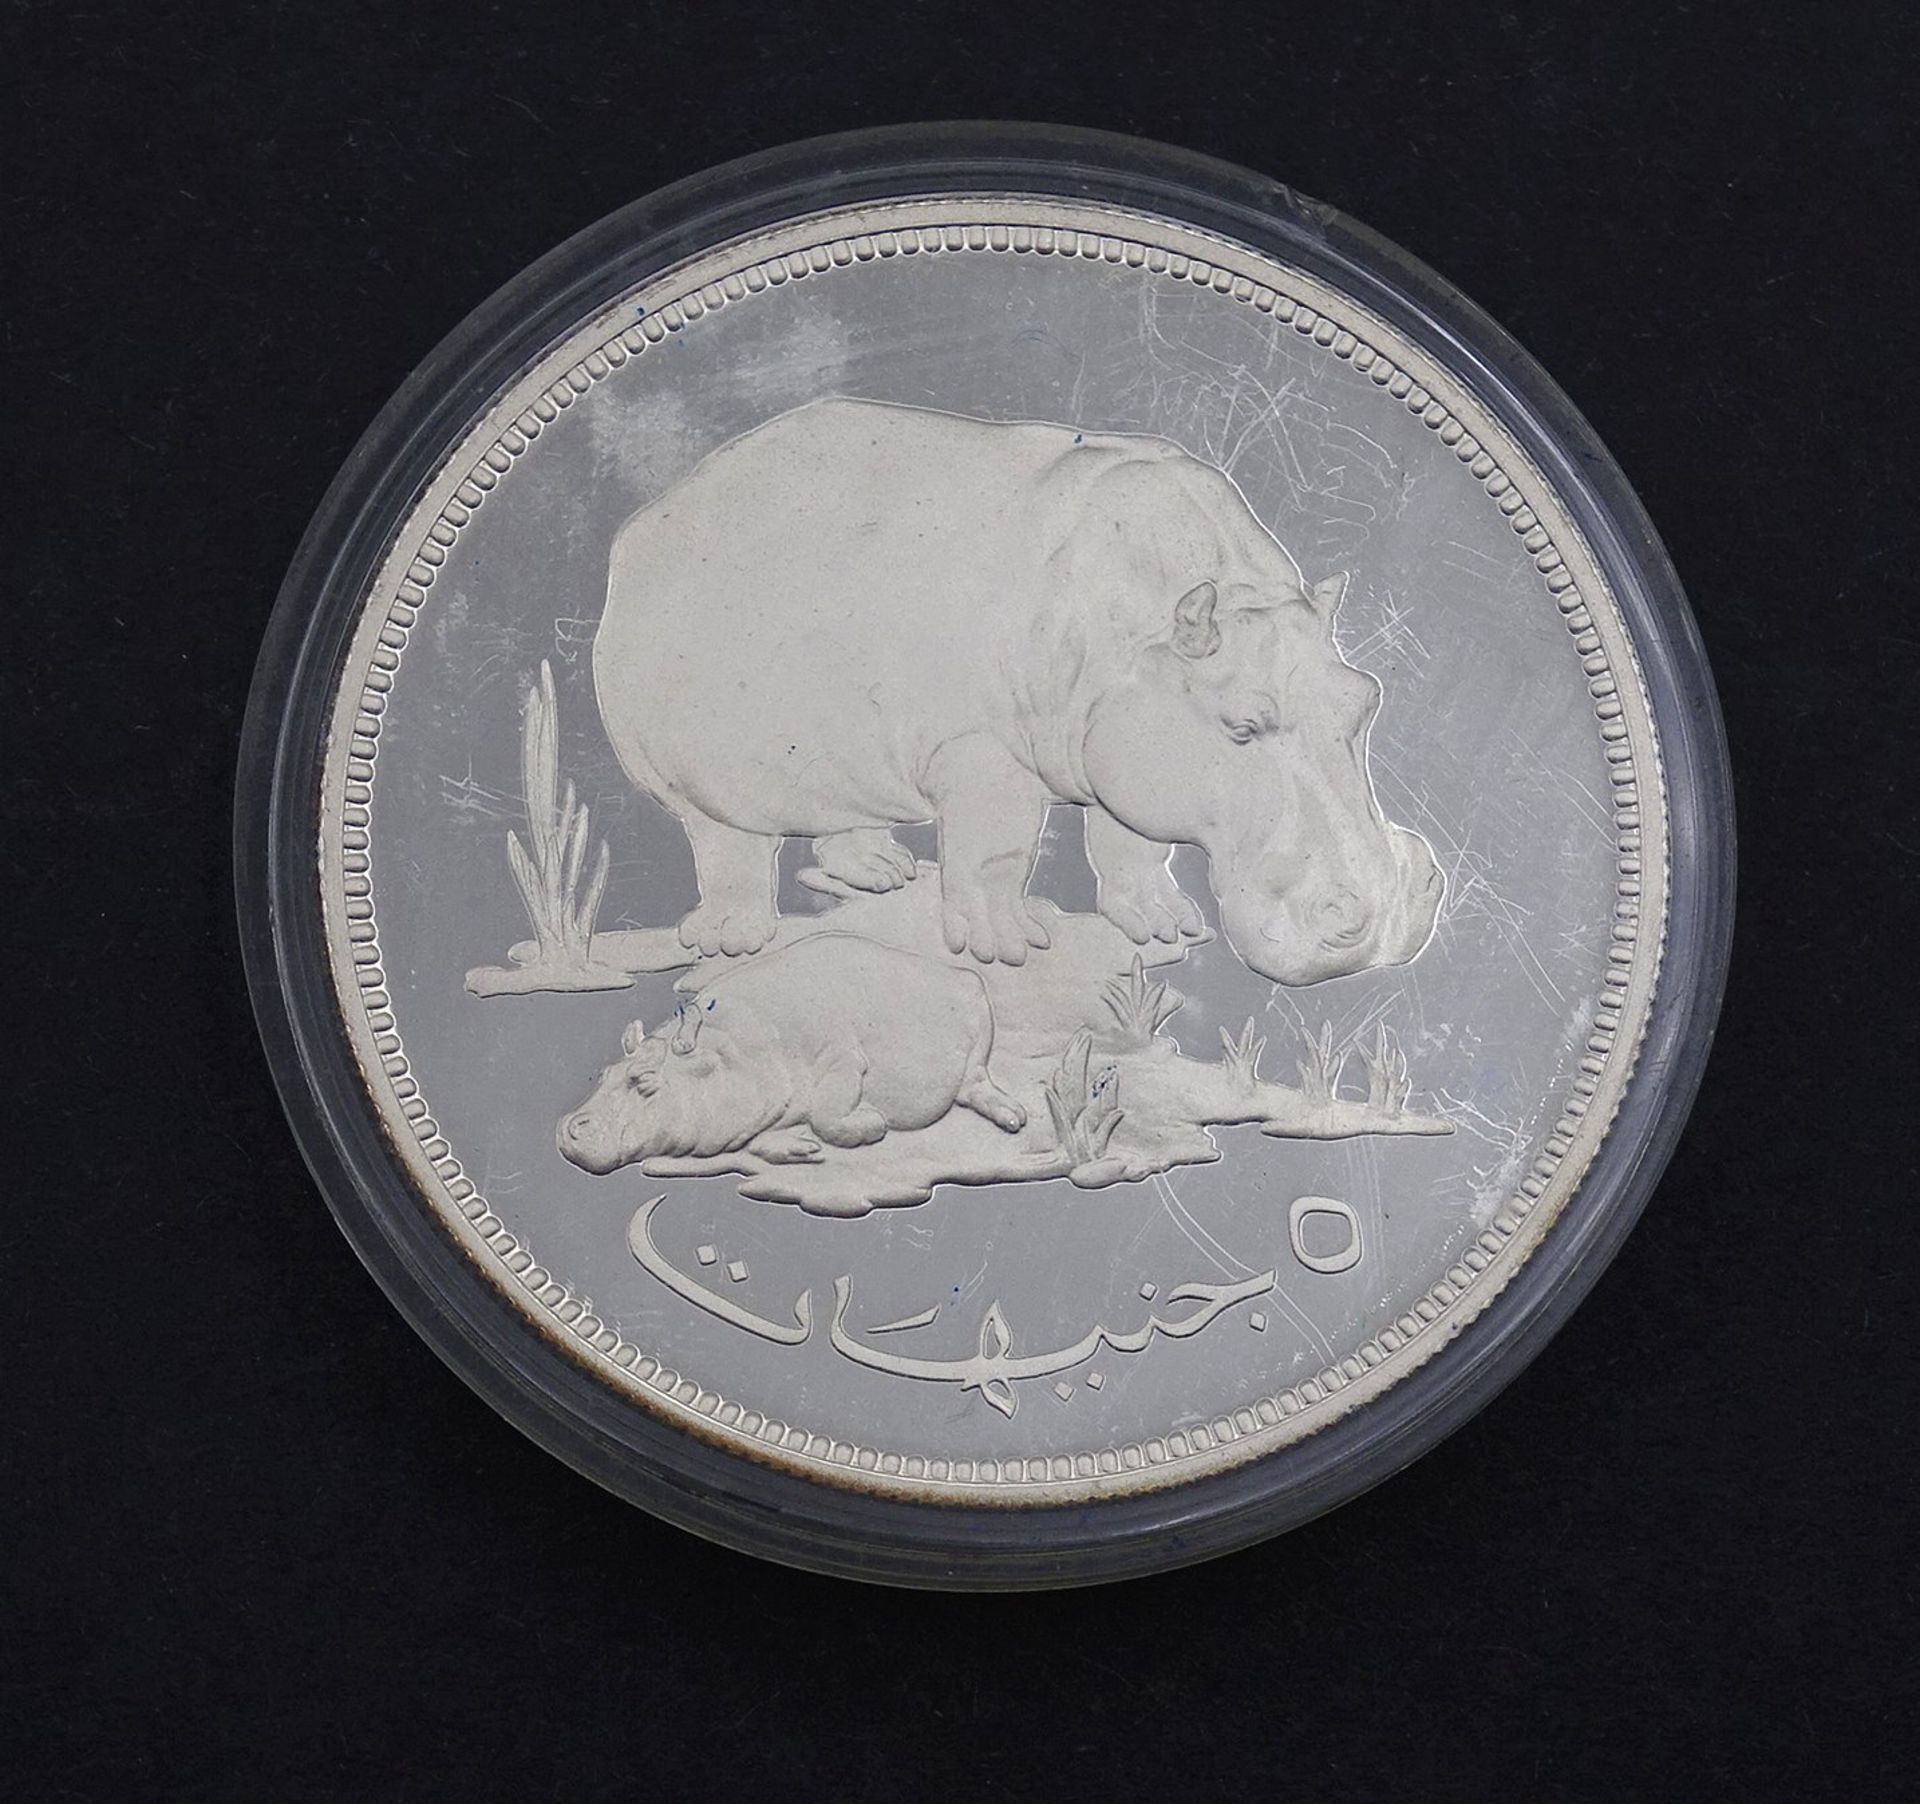 5 Pfund Sudan 1976, Silber, 35,20g.